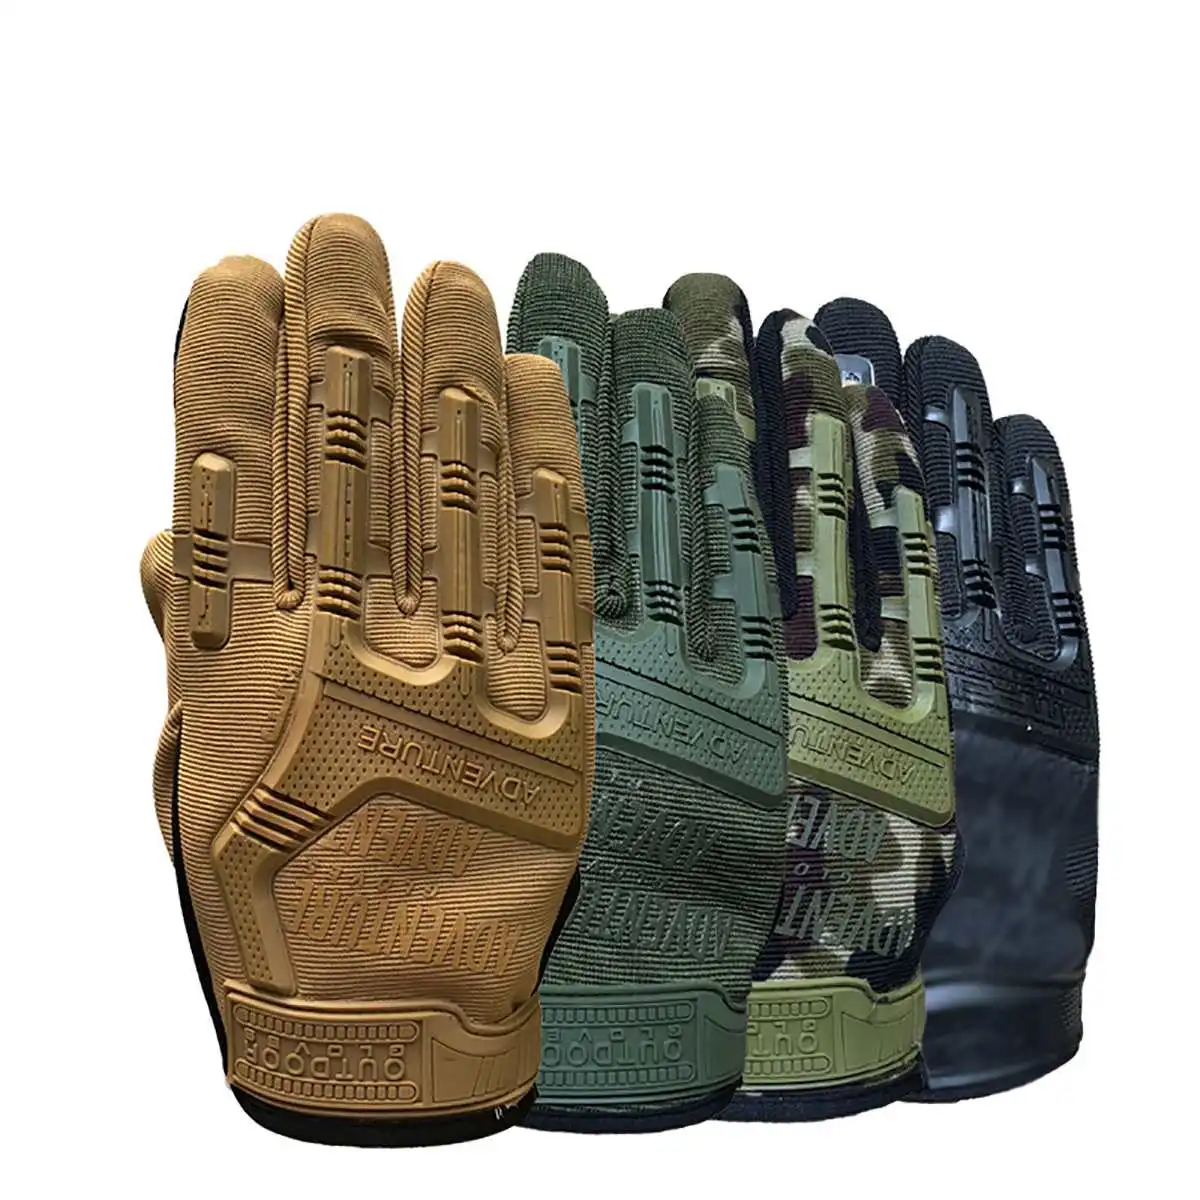 Полный/половина пальцев тактические перчатки мужские тактические перчатки военные армейские уличные охотничьи велосипедные спортивные противоскользящие мотоциклетные защитные